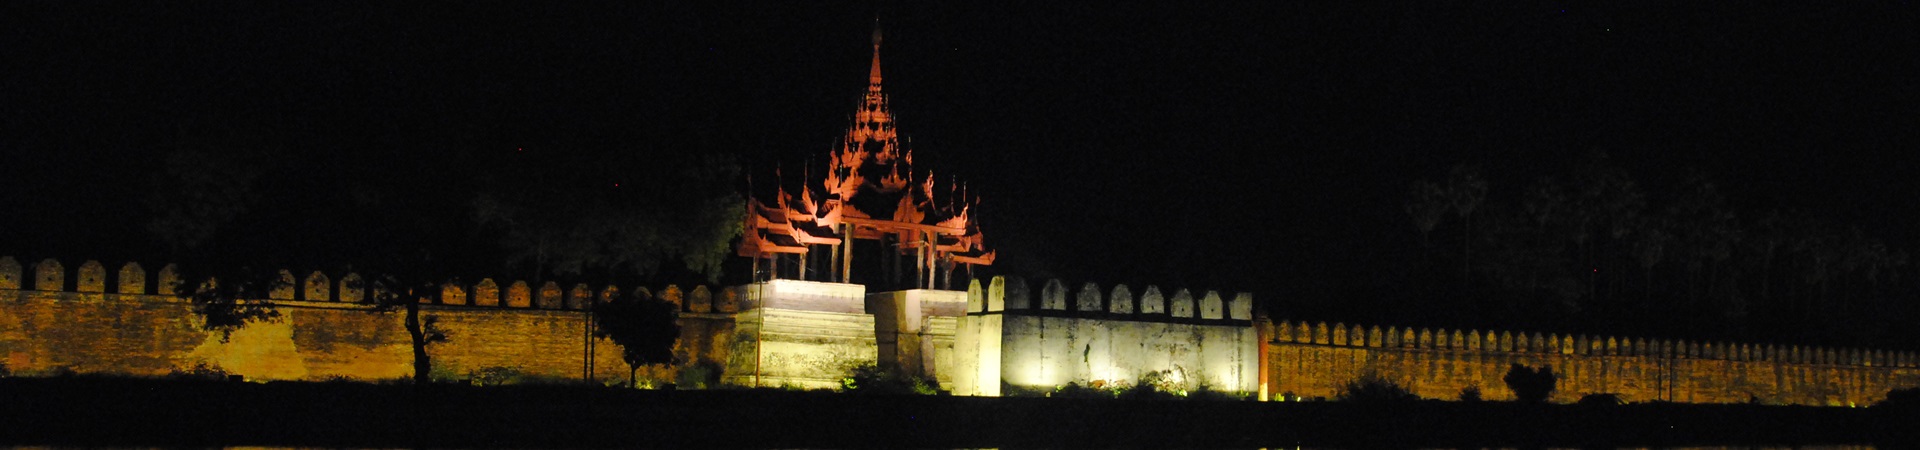 Image of Local Life in Mandalay at Night